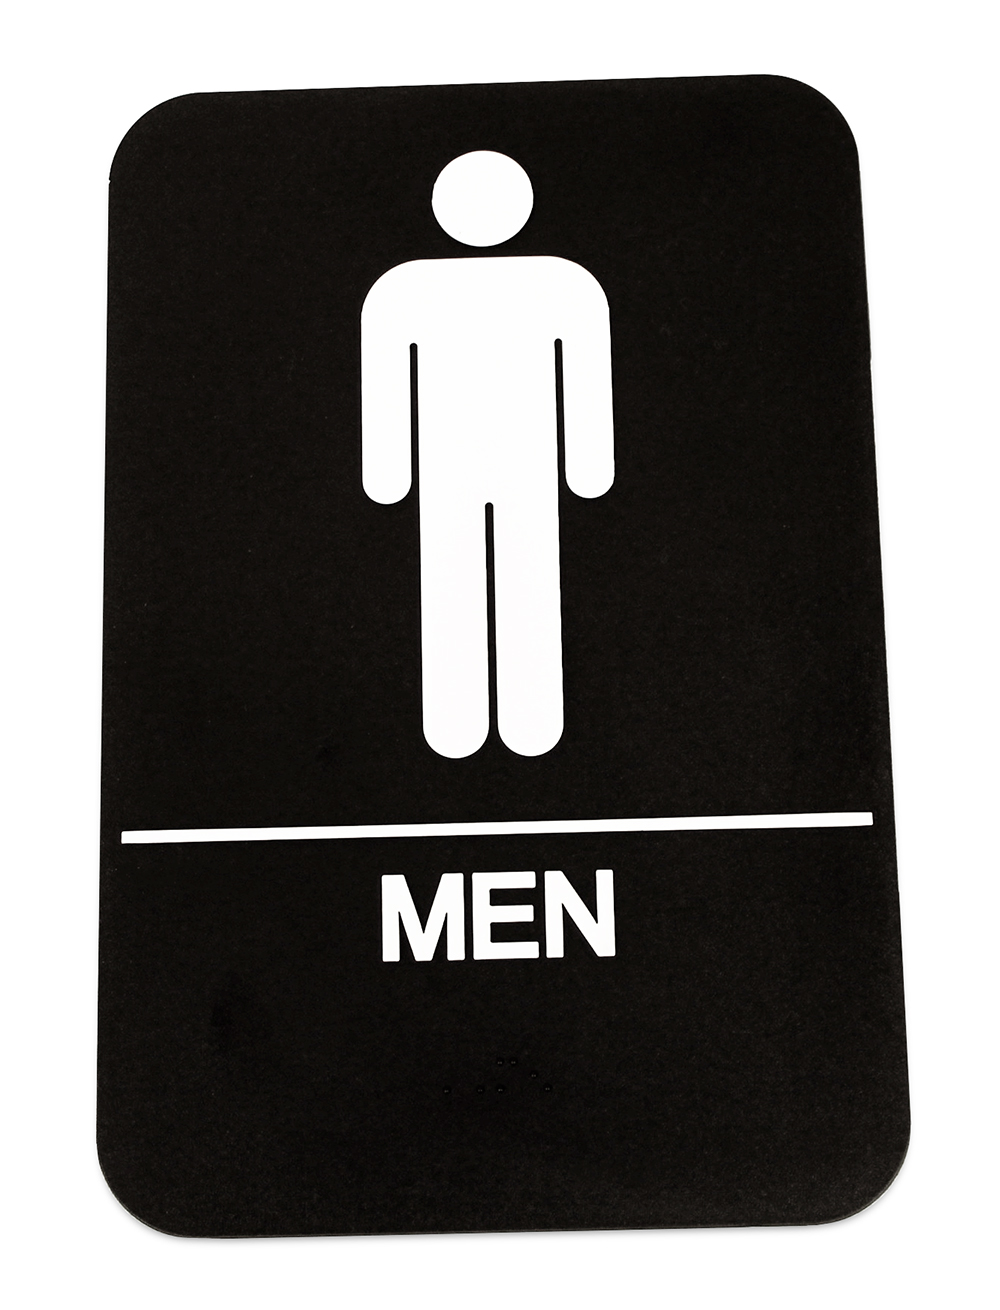 Men's  Restroom Sign